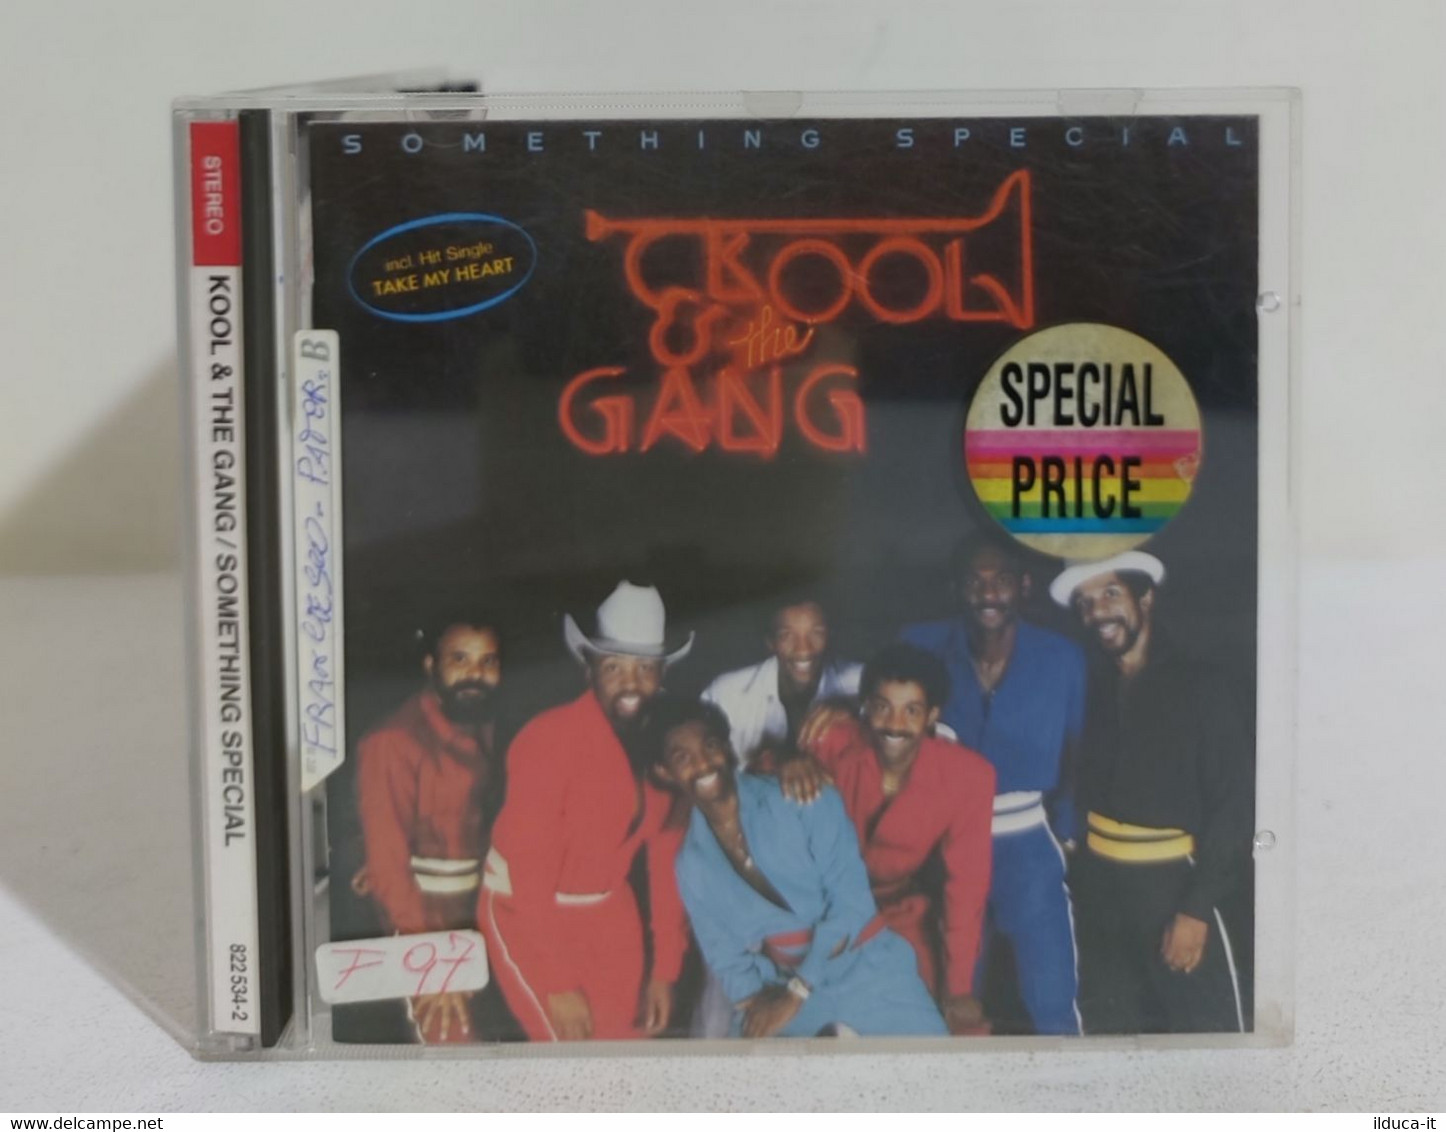 I108154 CD - KOOL & THE GANG - Something Special - Mercury 19?? - Soul - R&B